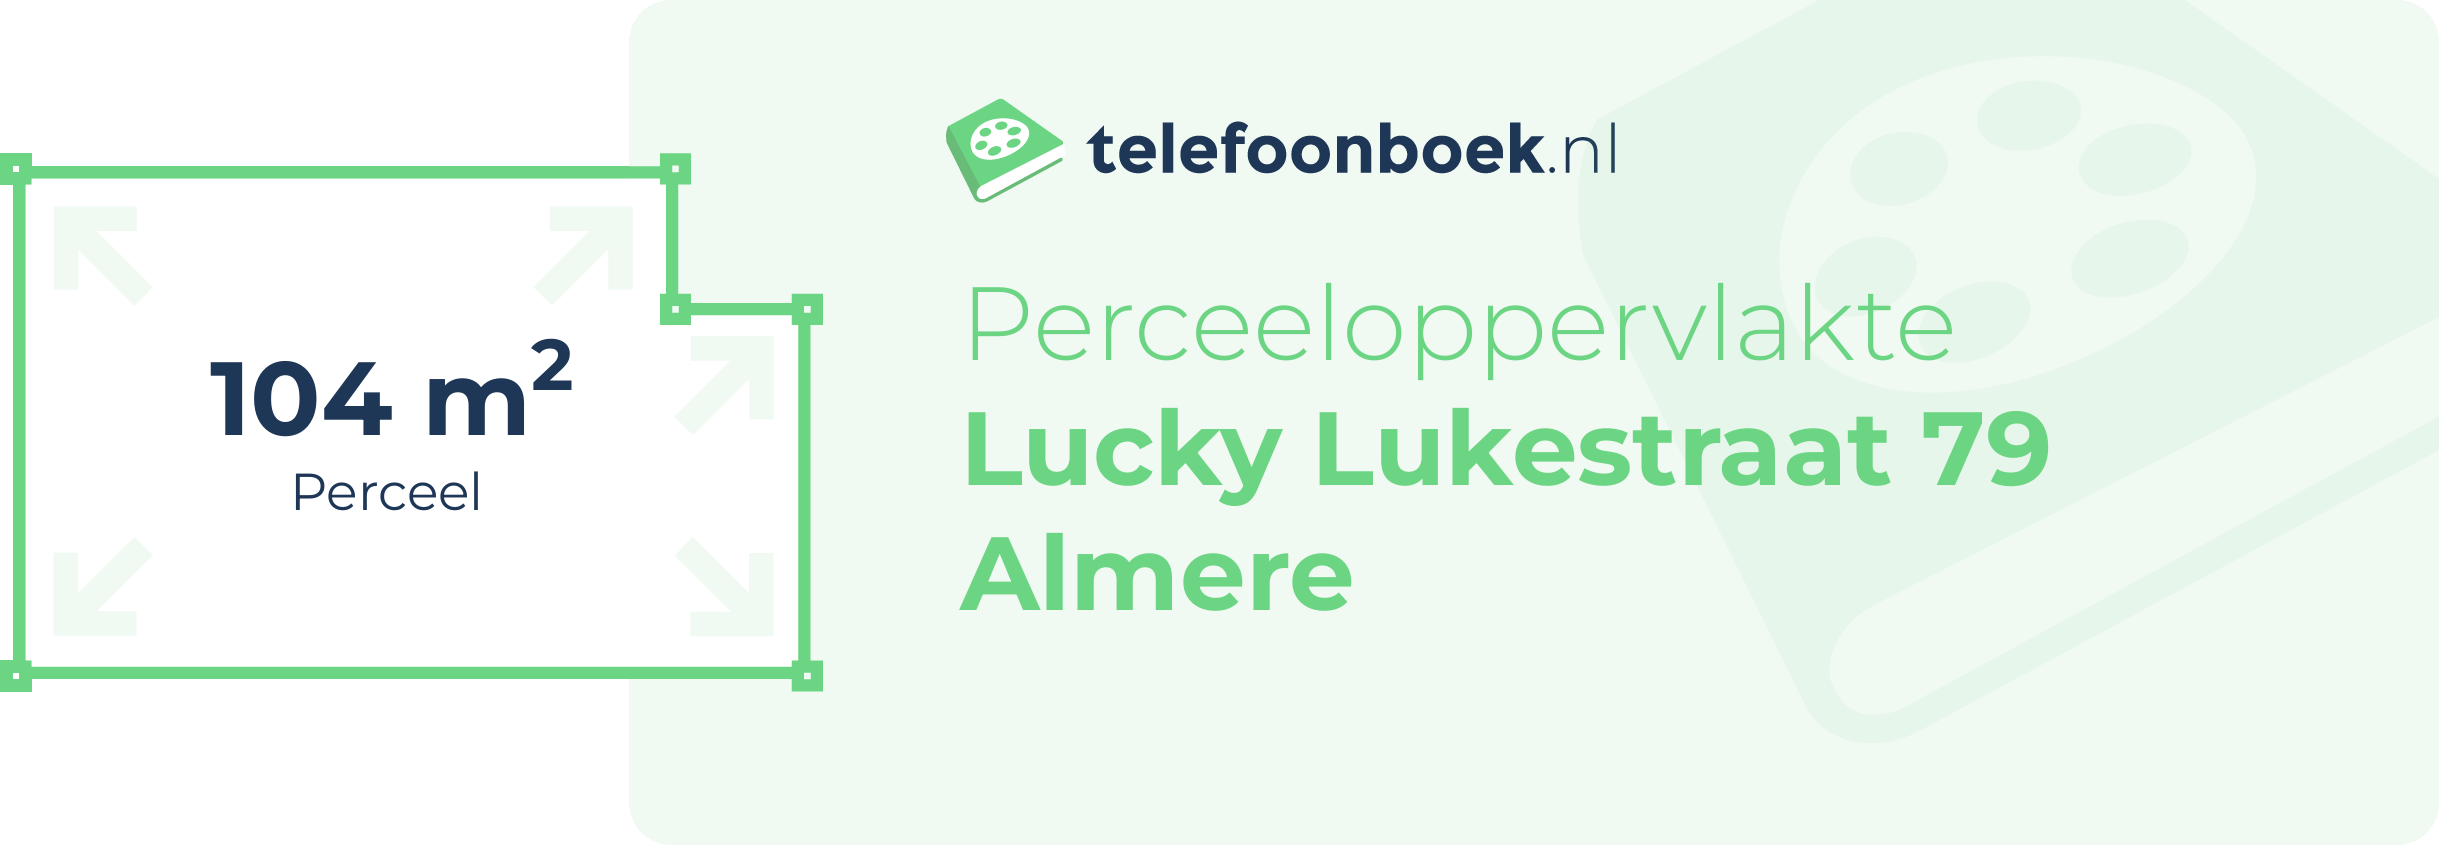 Perceeloppervlakte Lucky Lukestraat 79 Almere